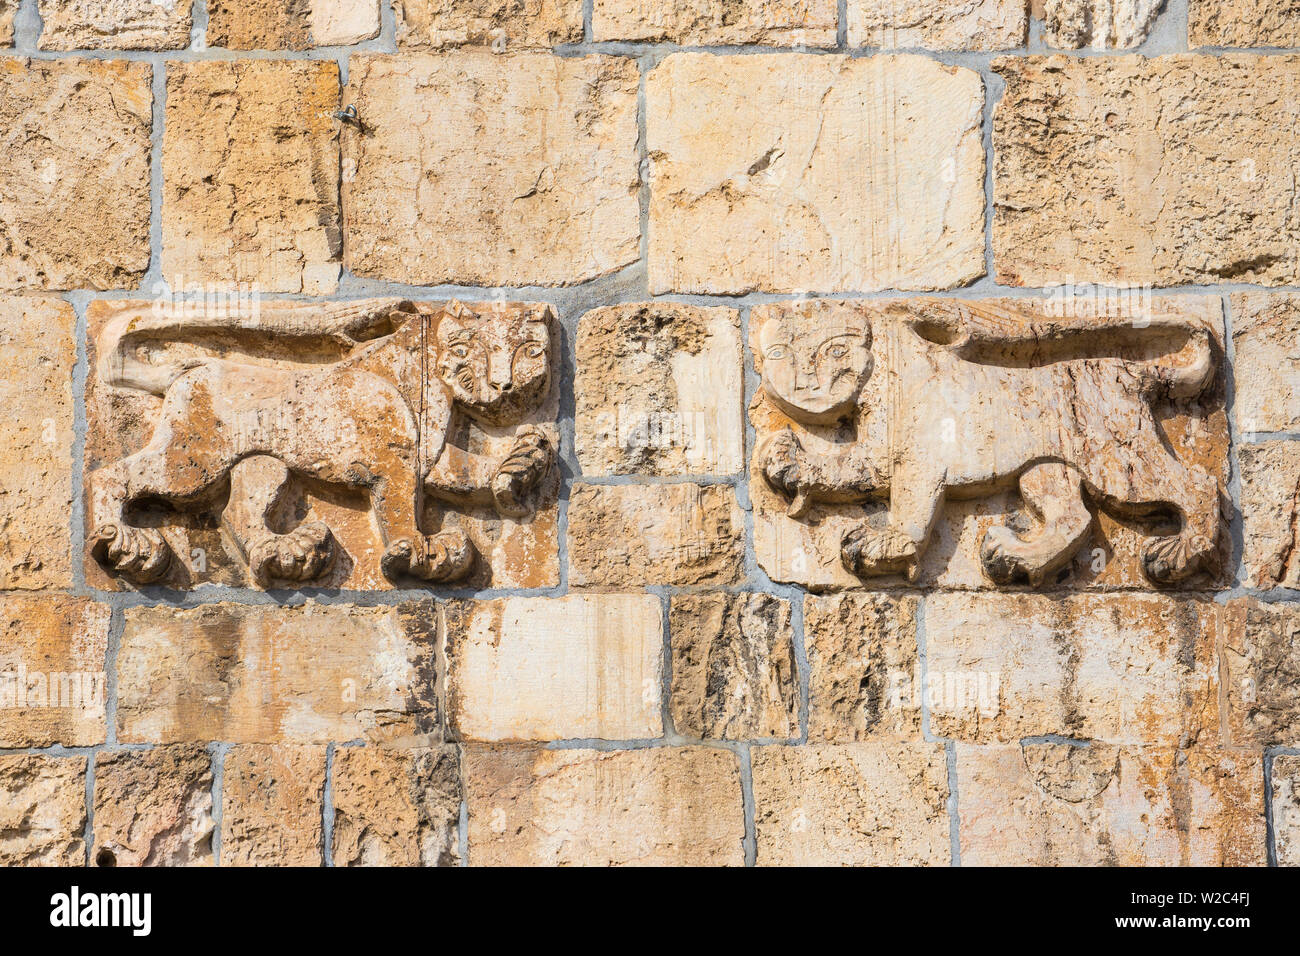 Israel, Jerusalem, Old City, St Stephen's Gate - The Lion Gate Stock Photo